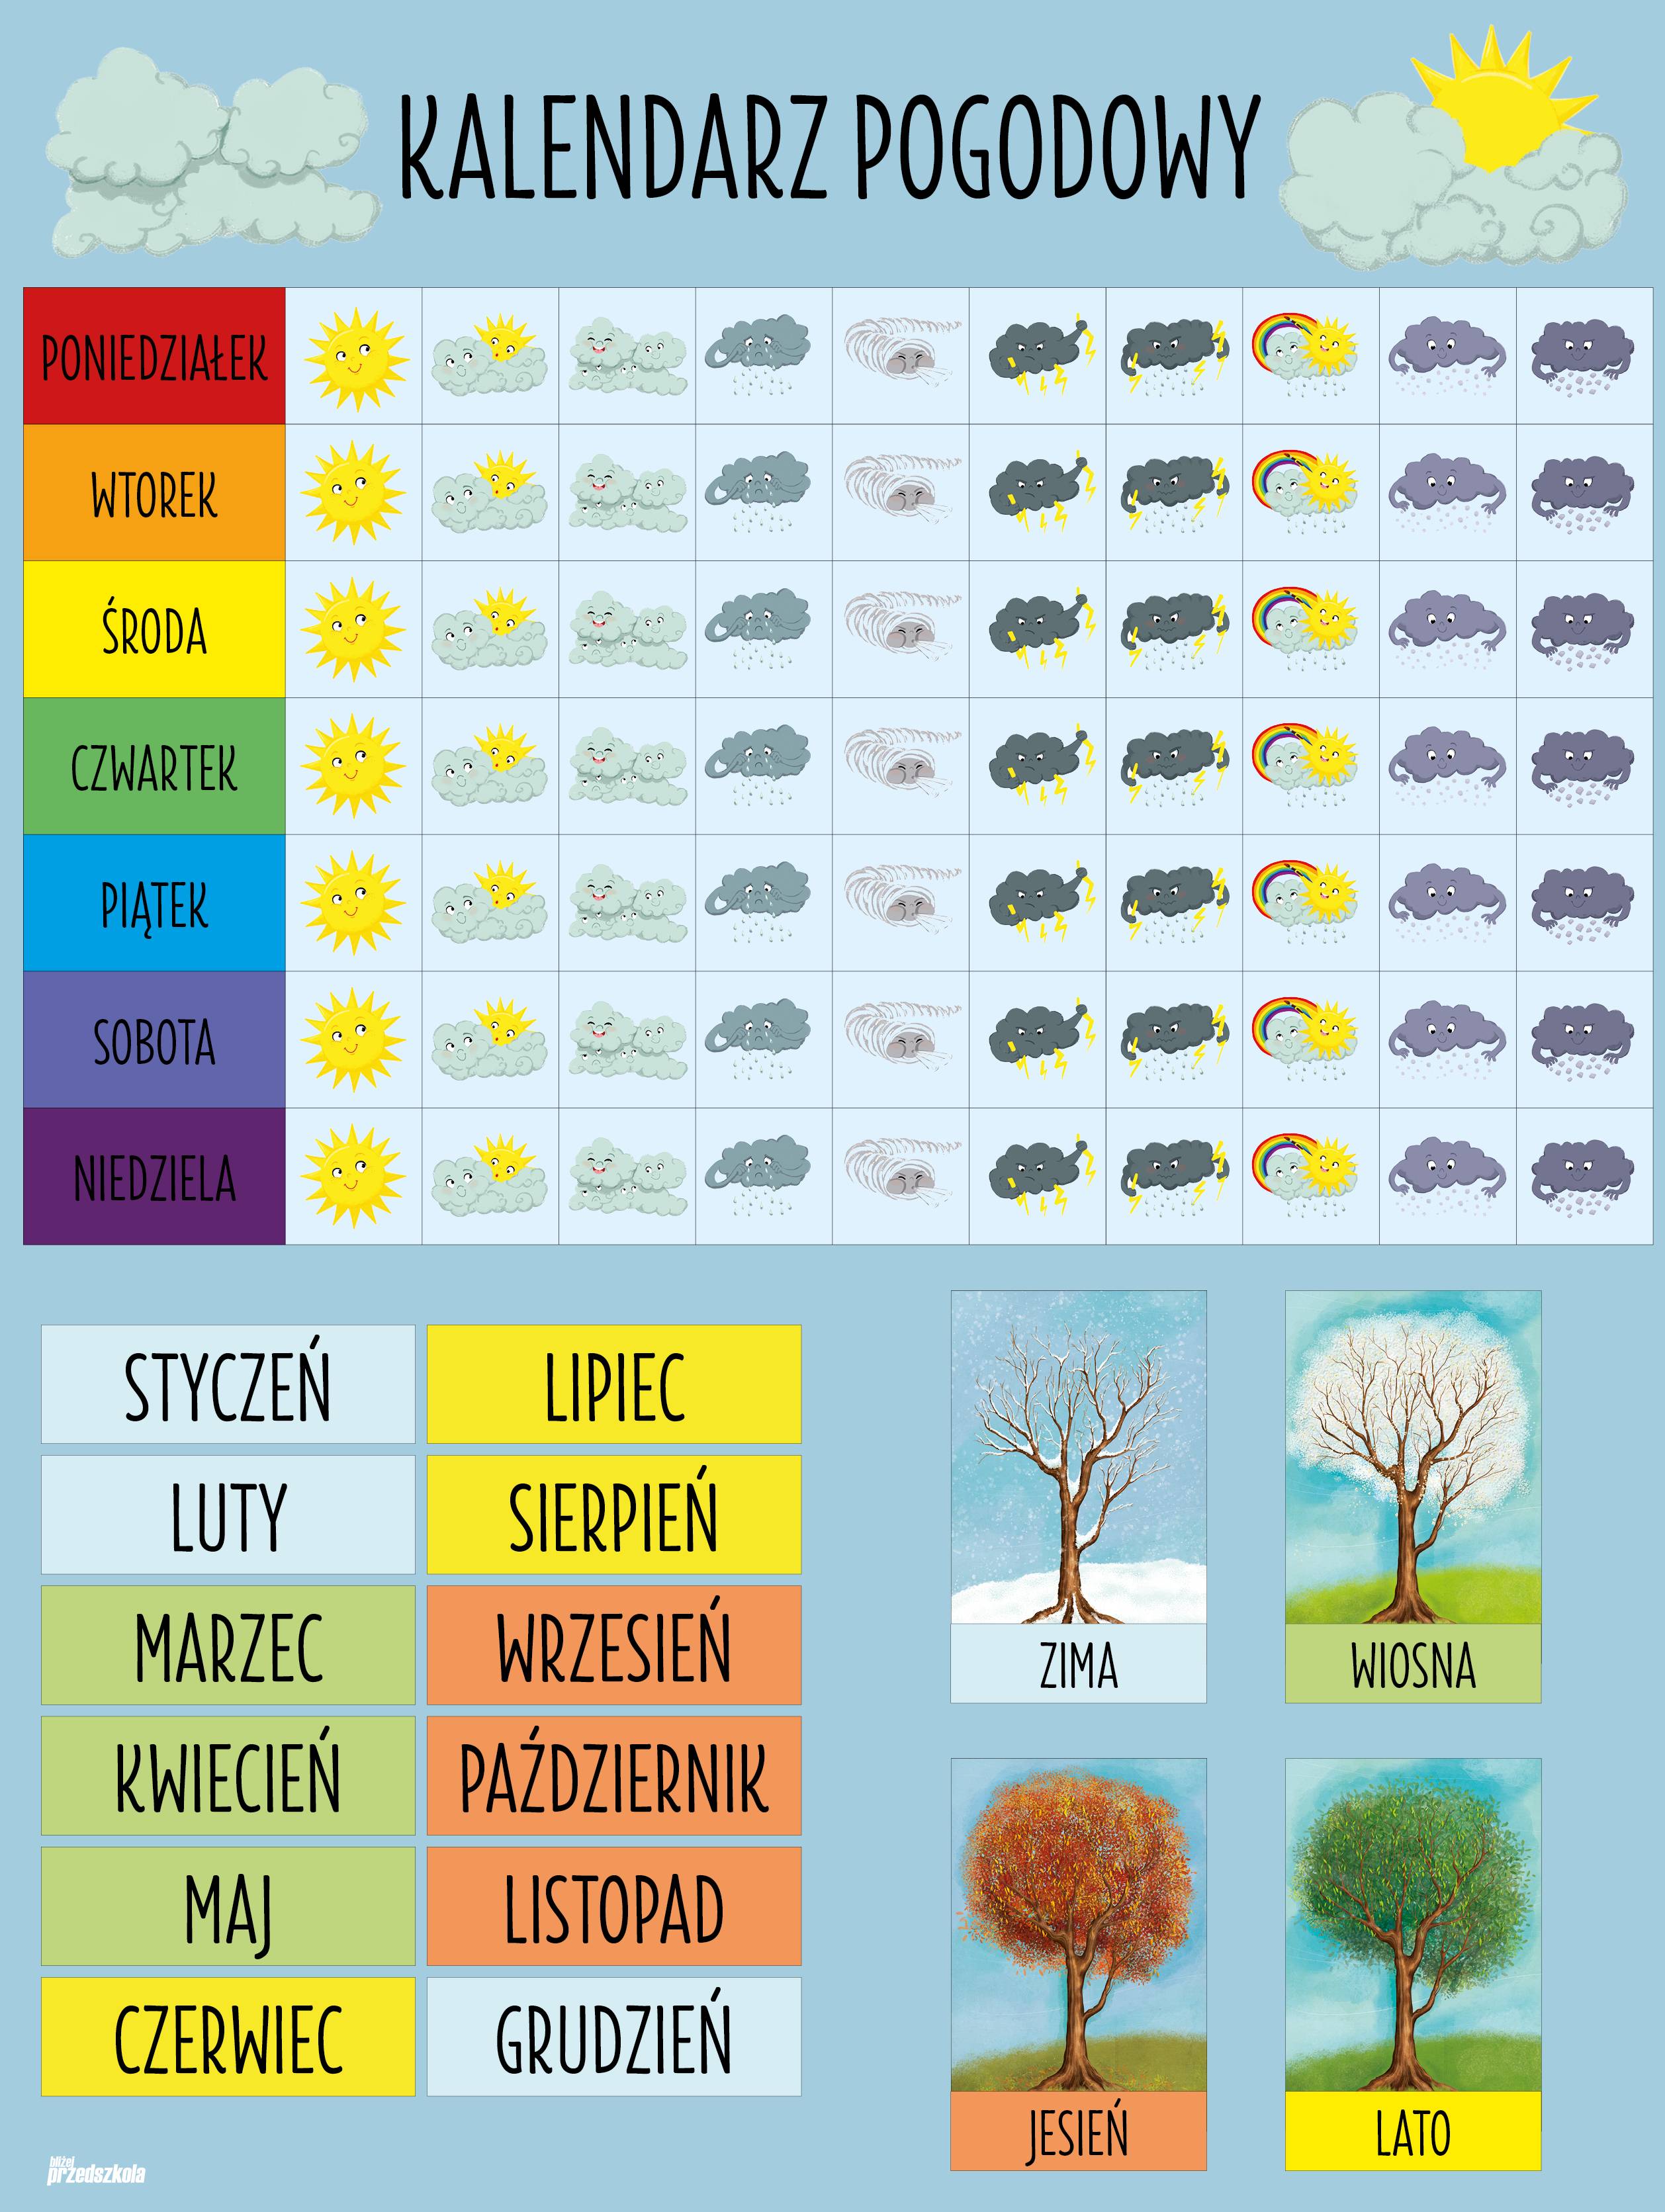 Польша зимой, весной, летом, осенью - сезоны и погода в польше по месяцам, климат, tемпература